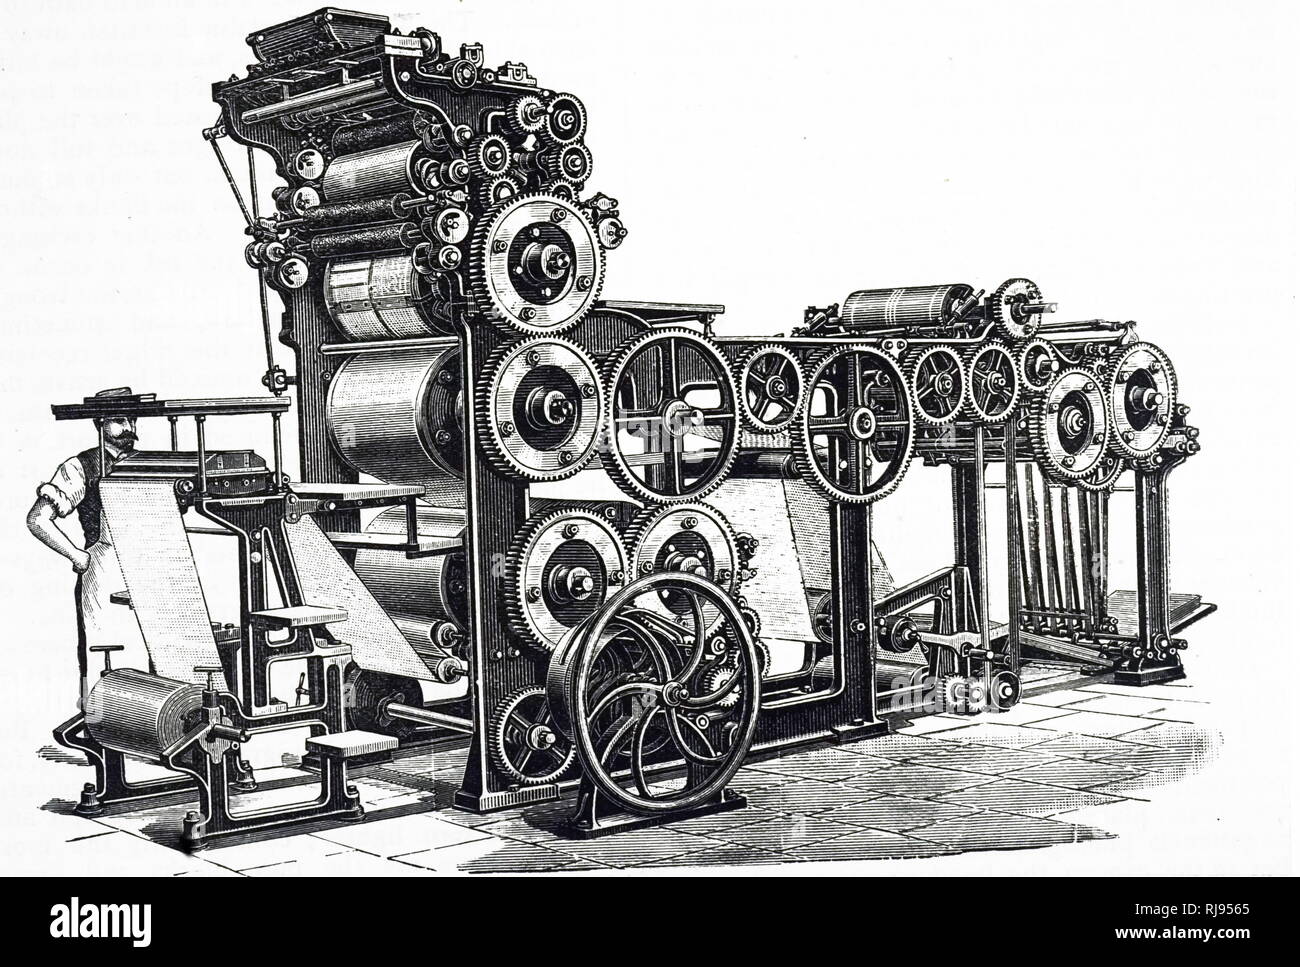 Eine Gravur, die rotationspresse des Marioni, für illustrierte Werk installiert. Diese Maschine konnte 7.000 Exemplare pro Stunde drehen Sie mit harten Verpackung von trockenes Papier. Vom 19. Jahrhundert Stockfoto